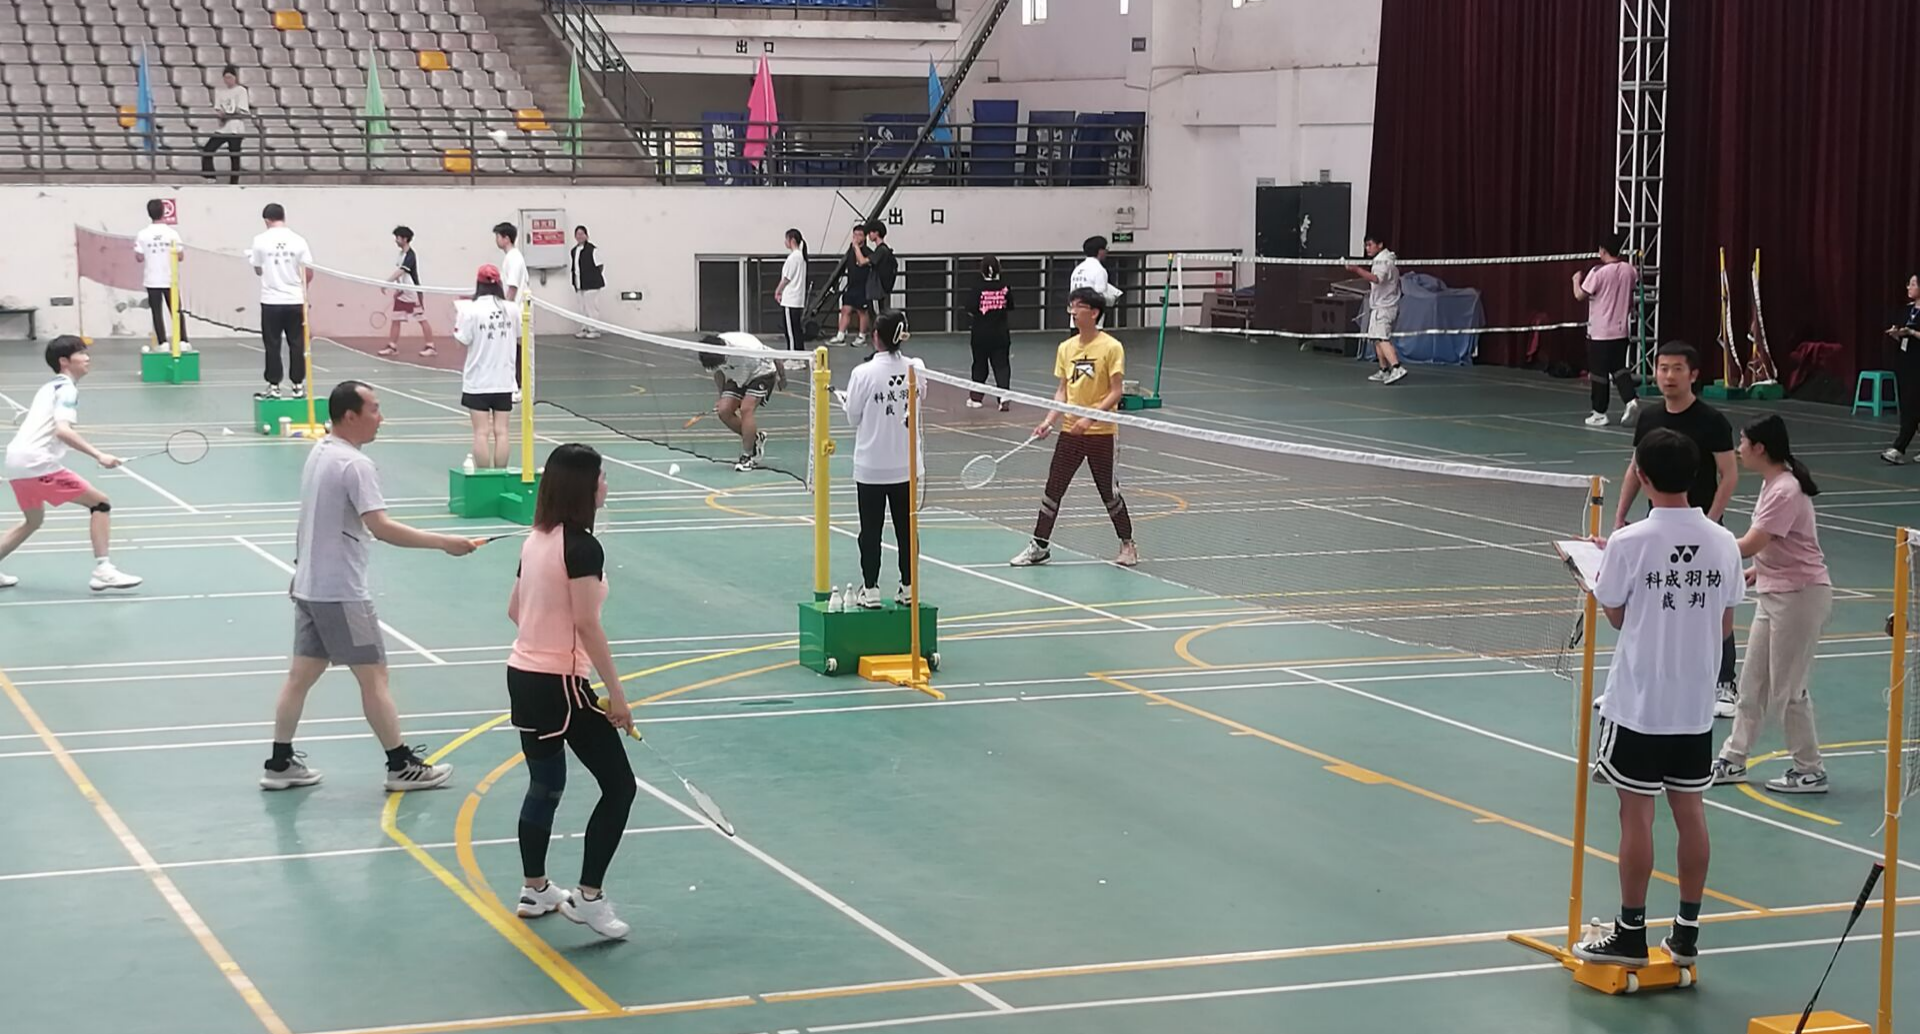 青春“羽”你 运动同行 ——艺术与科技学院参加校运会羽毛球比赛